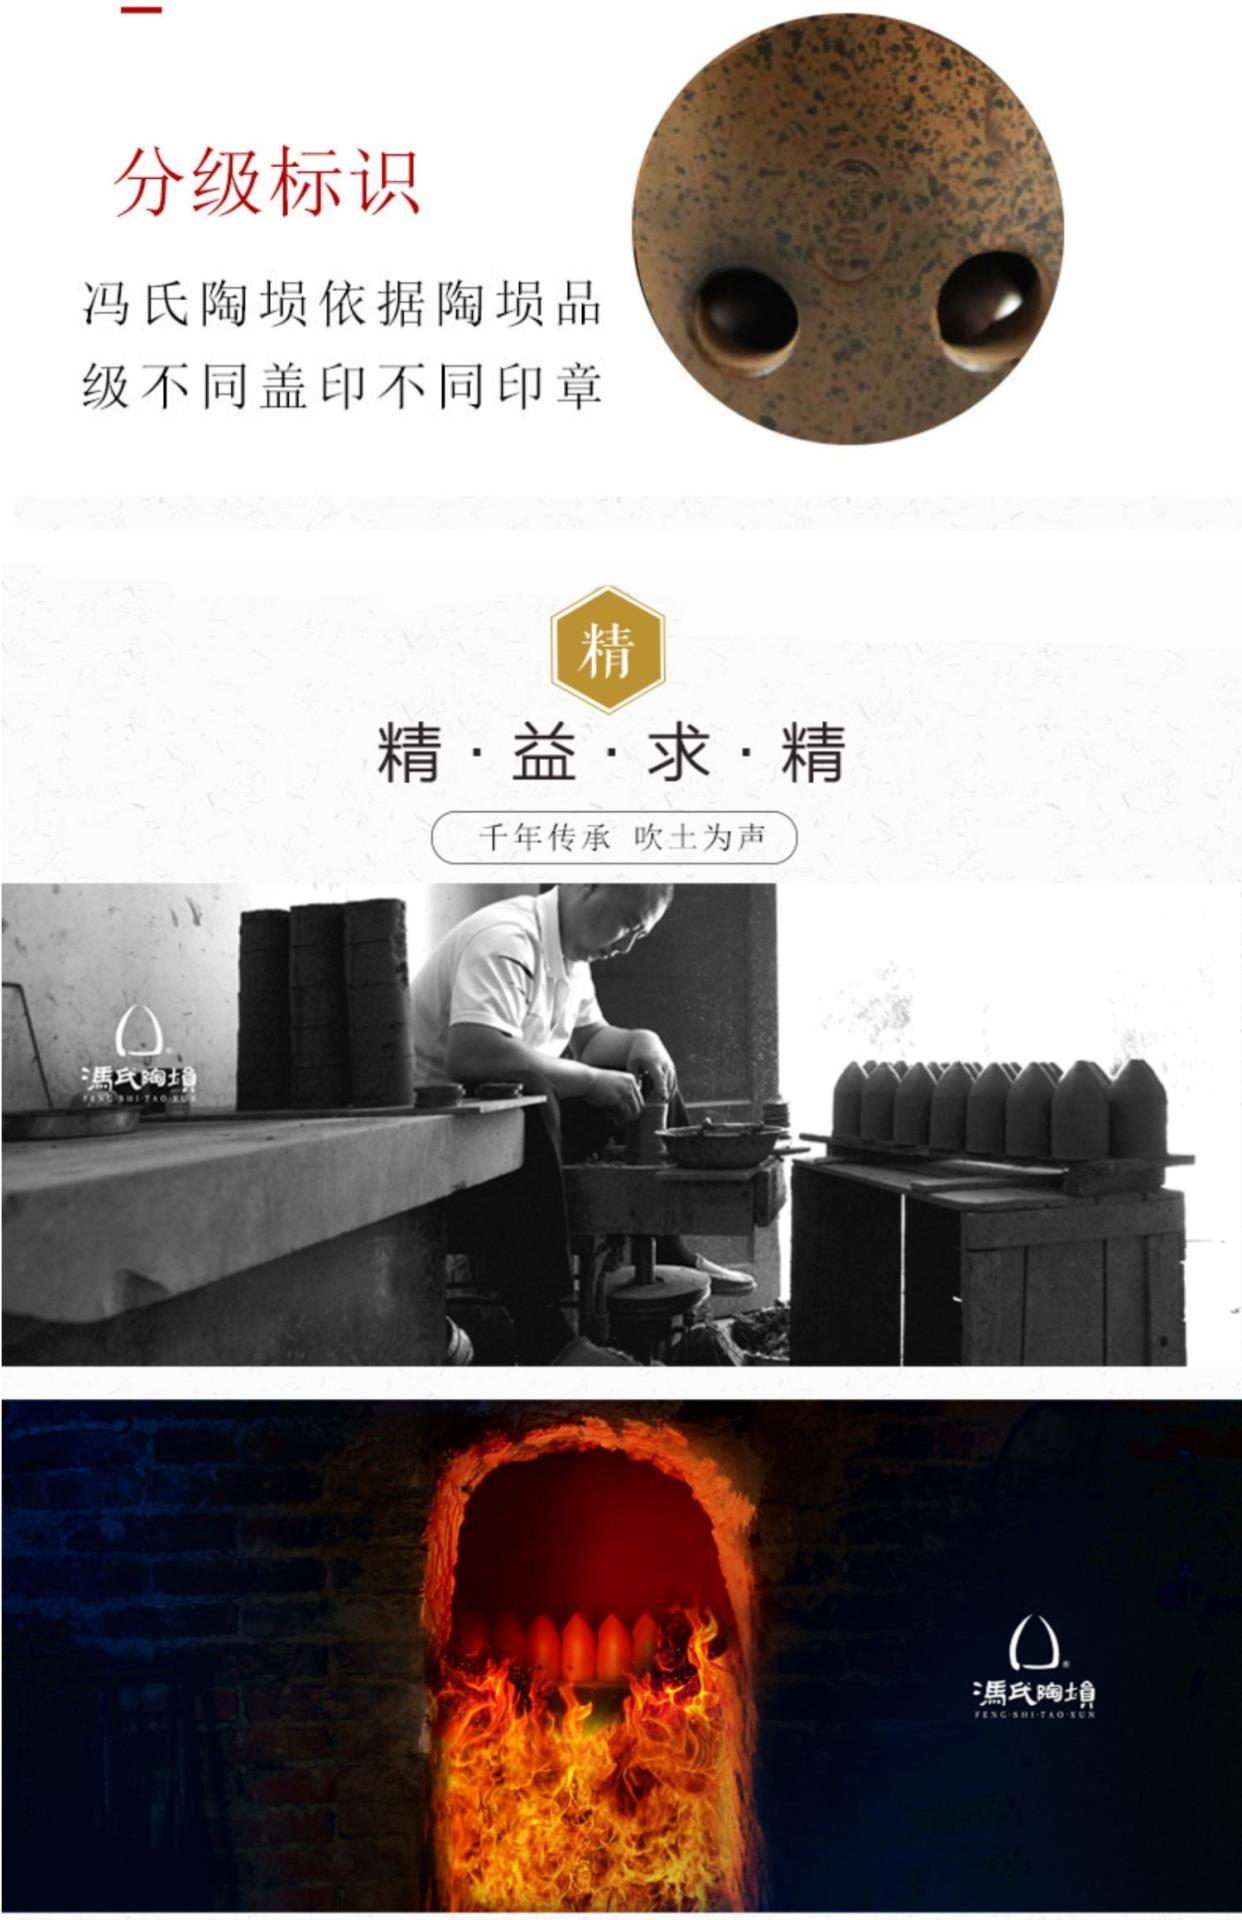 Chính hãng của Fengs Taoxun Tám lỗ Khoang đơn cho người mới bắt đầu Hút khói tinh xảo Hình quả lê Xun Nhạc cụ quốc gia trình diễn chuyên nghiệp - Nhạc cụ dân tộc